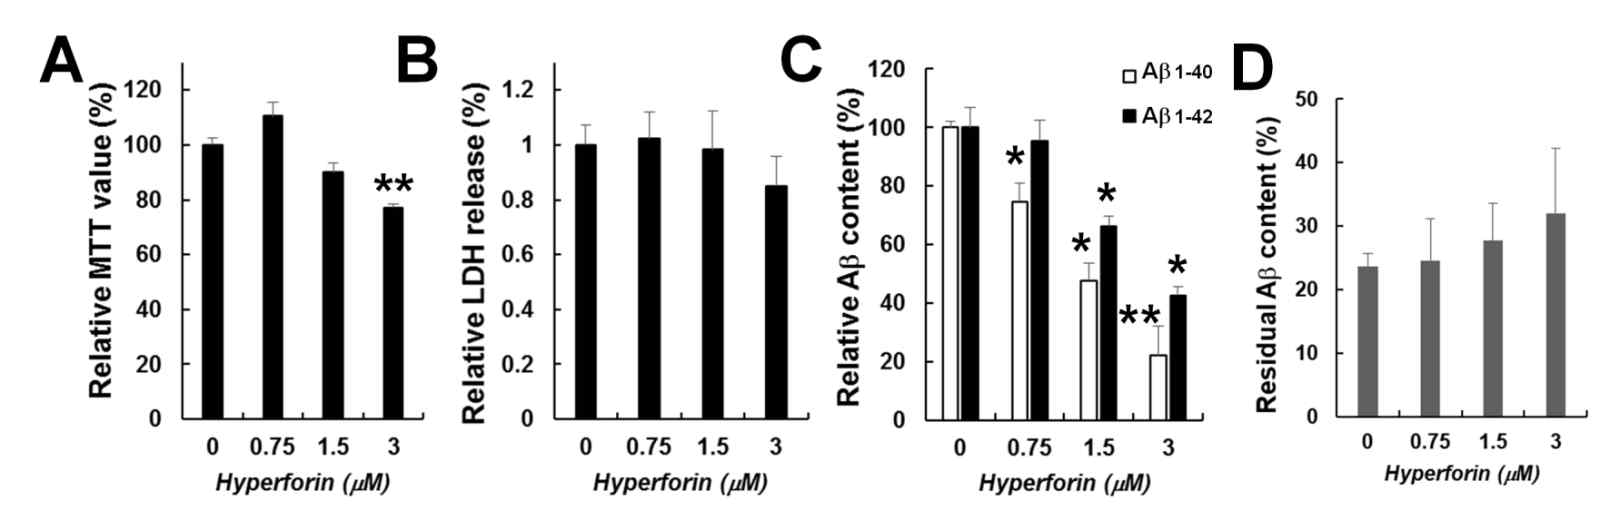 HEK293 APPsw stable 세포주에서의 hyperforin에 의한 베타 아밀로이드의 감소. (A) MTT assay. (B) LDH release assay. (C) media에서의 sandwich ELISA를 통한 human beta-amyloid 1-40/42의 상대량 비교. A~C의 실험은 hyperforin의 기술된 농도로 8시간 동안 처리 후 수행하였음. D의 경우 HEK293 세포주에 1ng의 베타 아밀로이드를 처리한 후, 4시간 후의 잔여 베타아밀로이드 양을 측정한 결과임